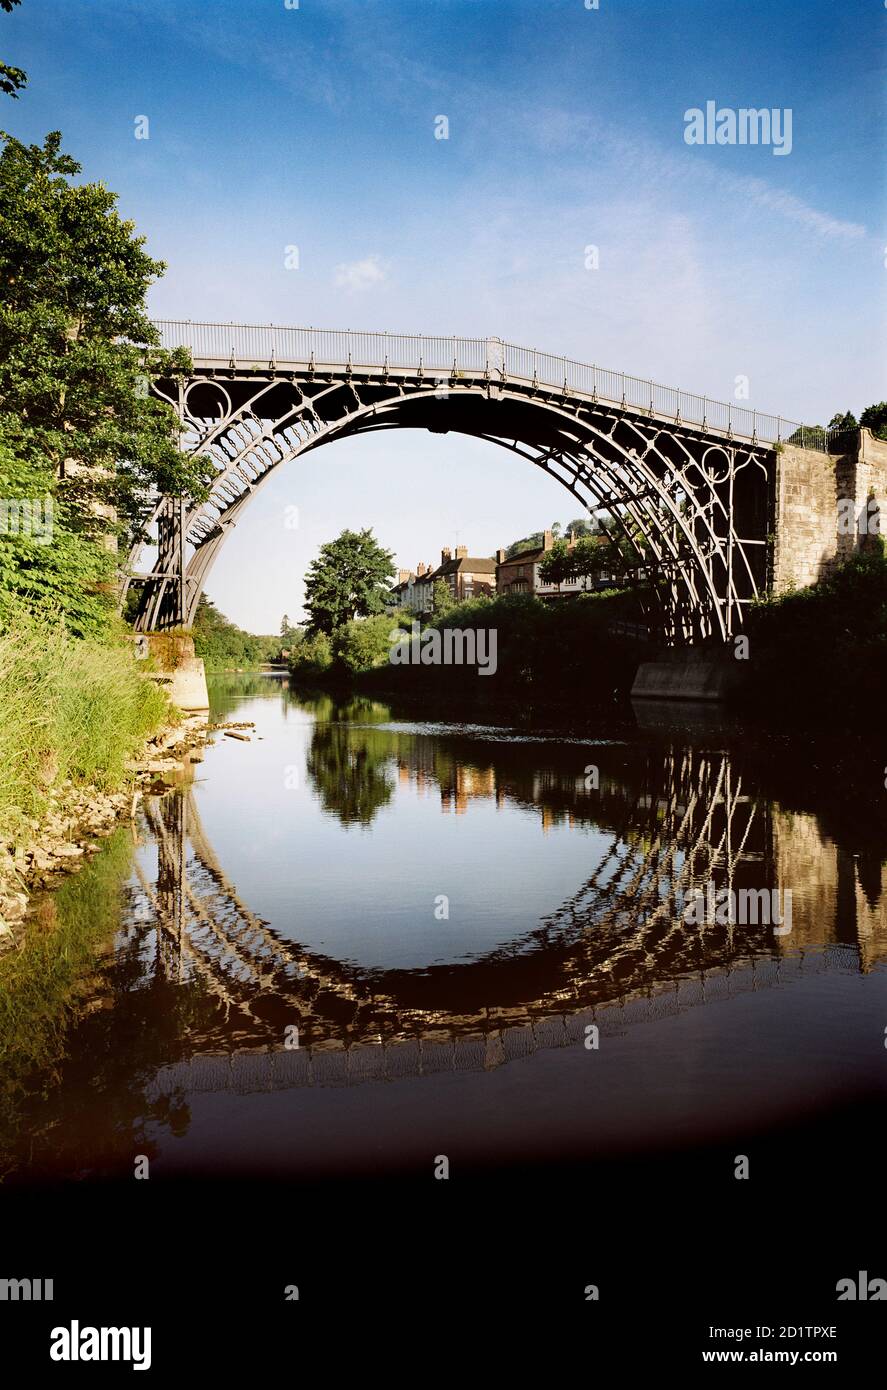 IRON BRIDGE, Telford, Shropshire. Vista del ponte lungo il fiume con riflessi in acqua. Foto Stock